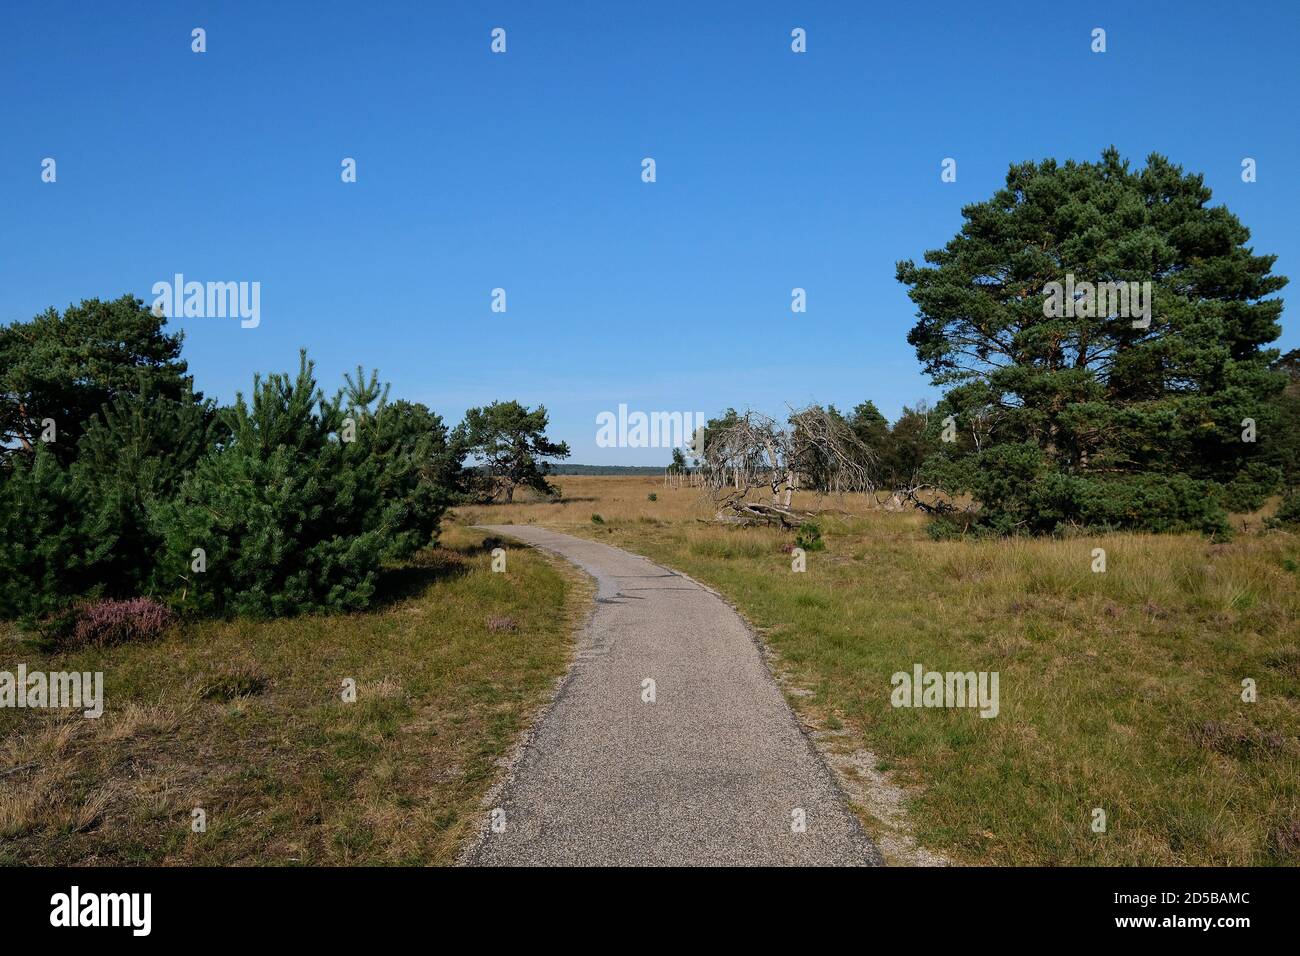 Percorso ciclabile attraverso il paesaggio di brughiera nel Parco Nazionale De Hoge Veluwe, un parco naturale nei Paesi Bassi, provincia Gelderland Foto Stock